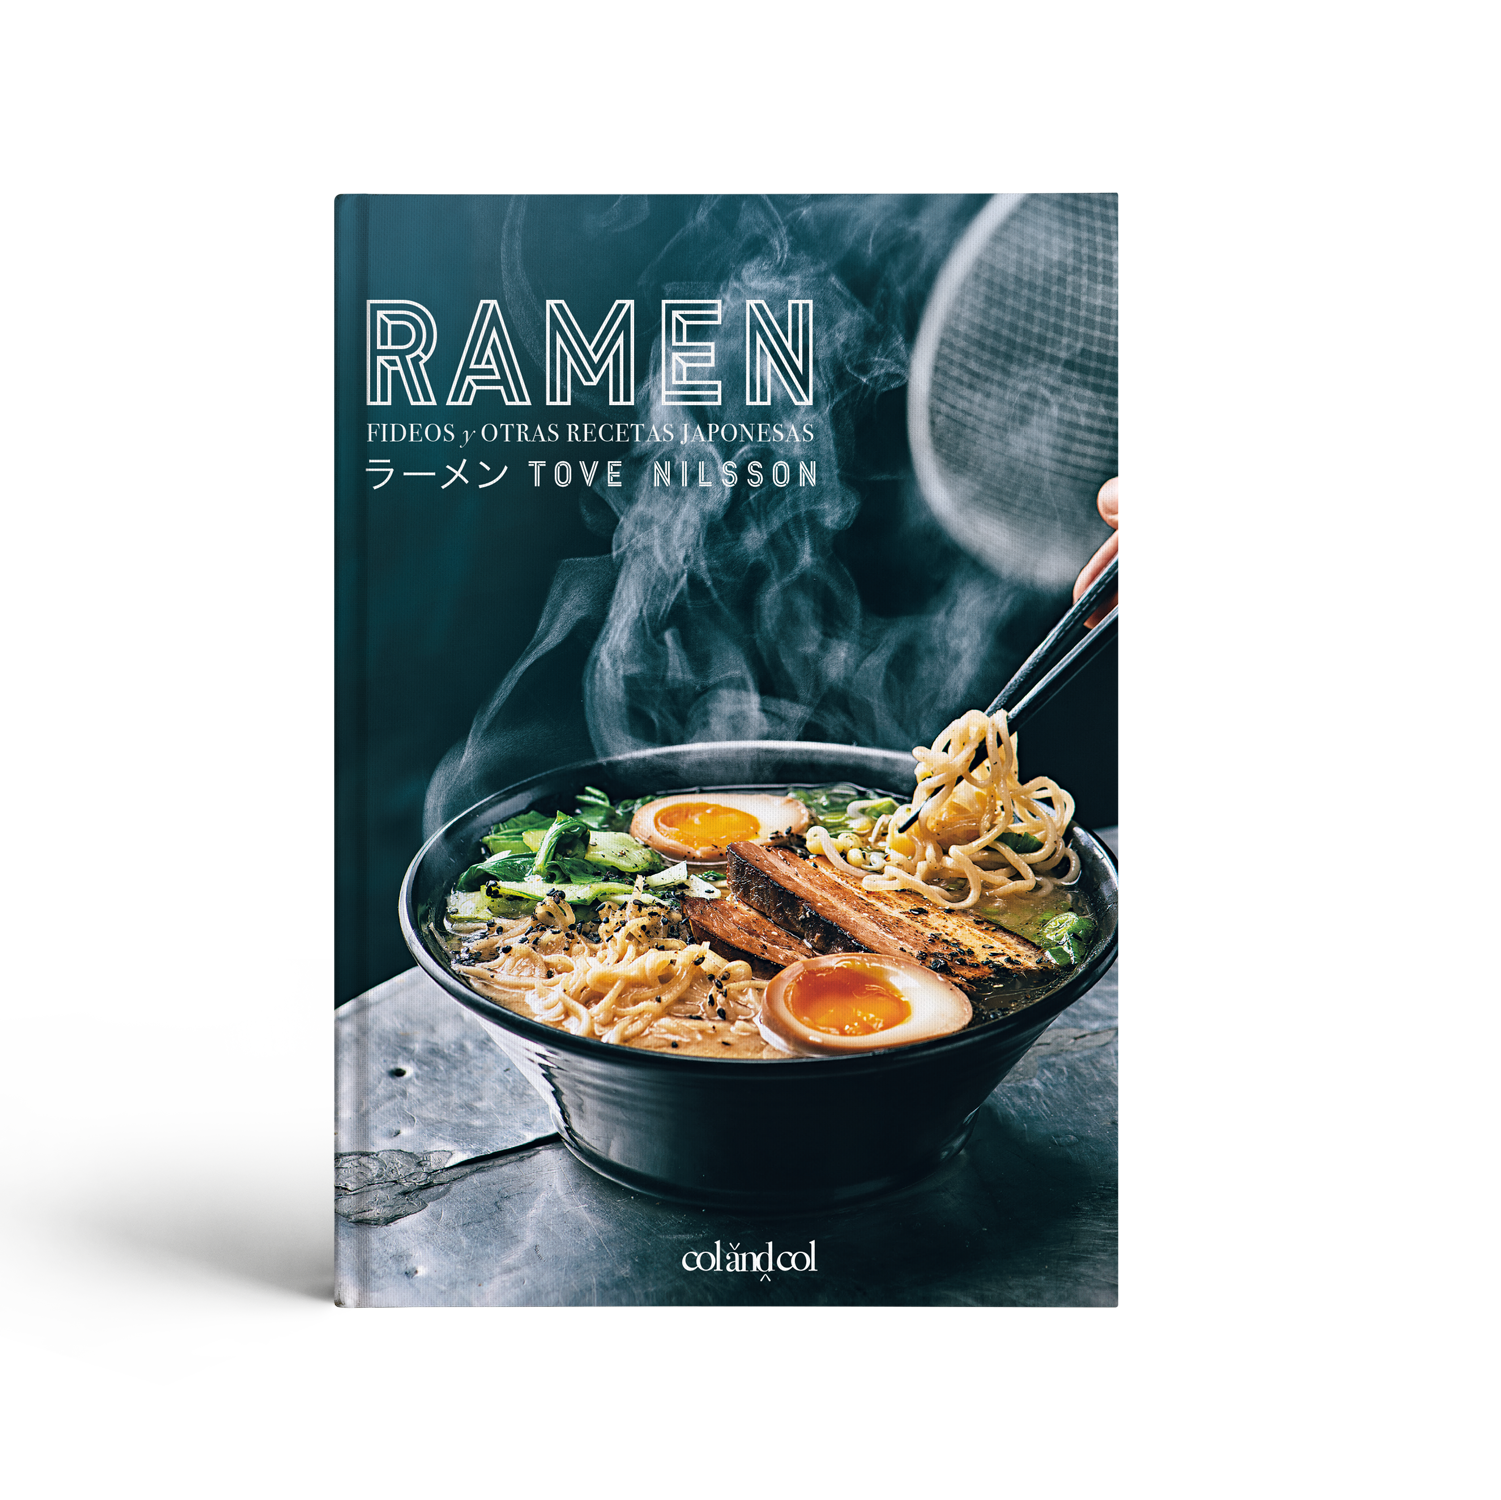 Ramen, Fideos y otras recetas japonesas